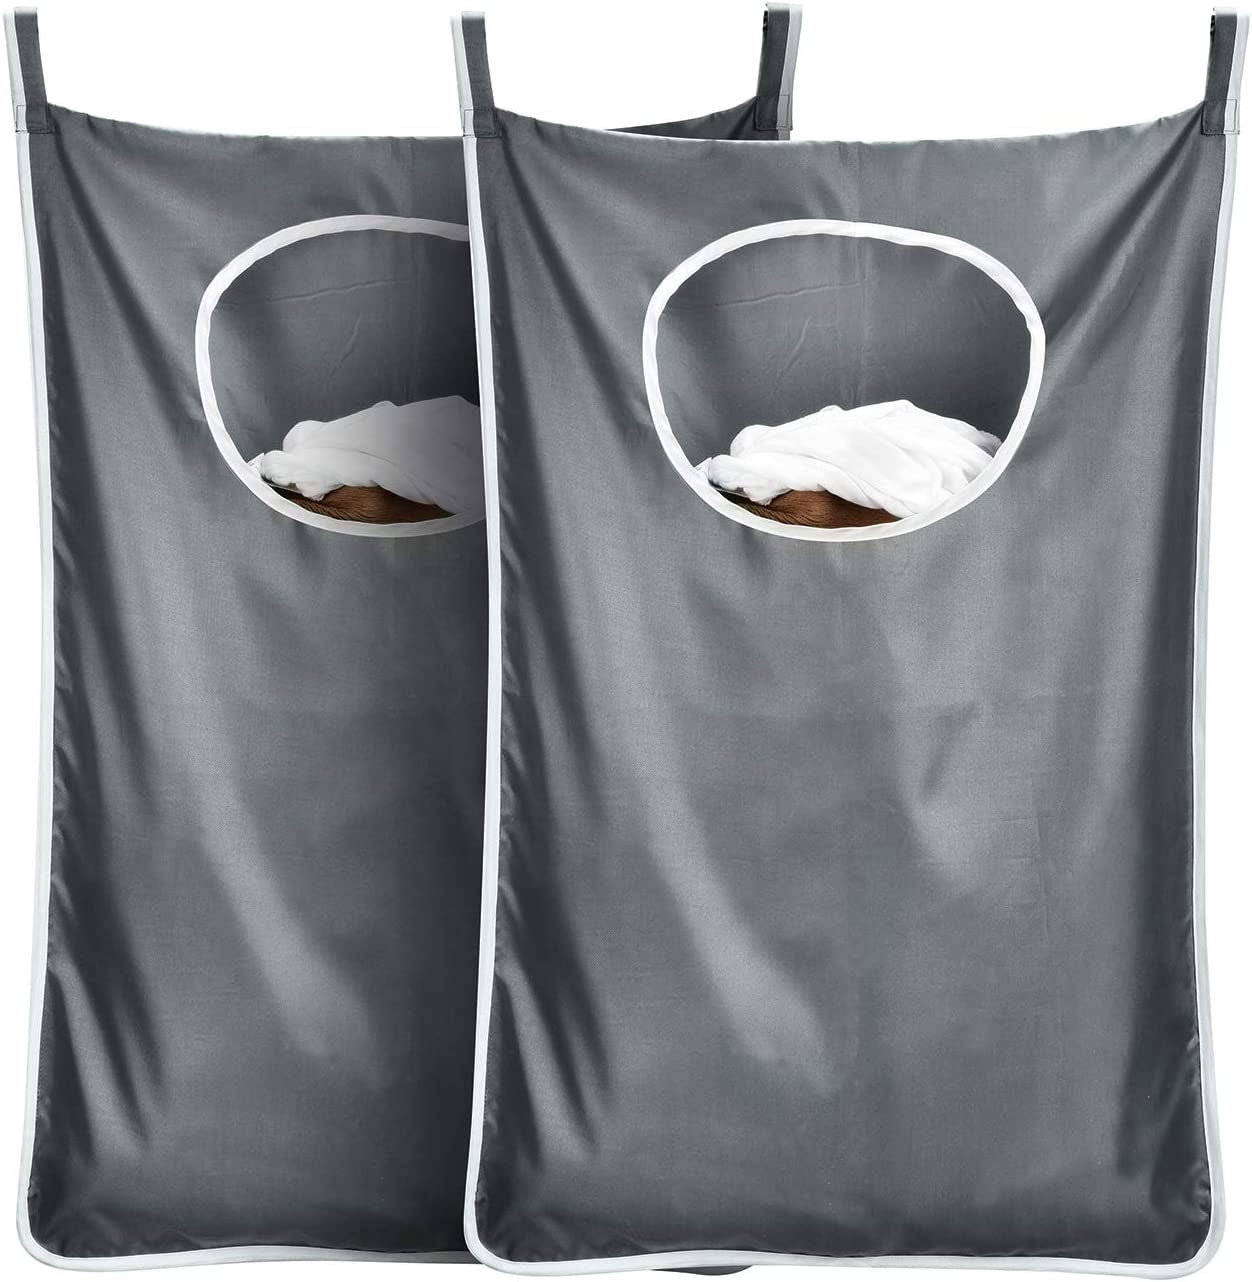 Durable Hanging Laundry Hamper Bag behind Door